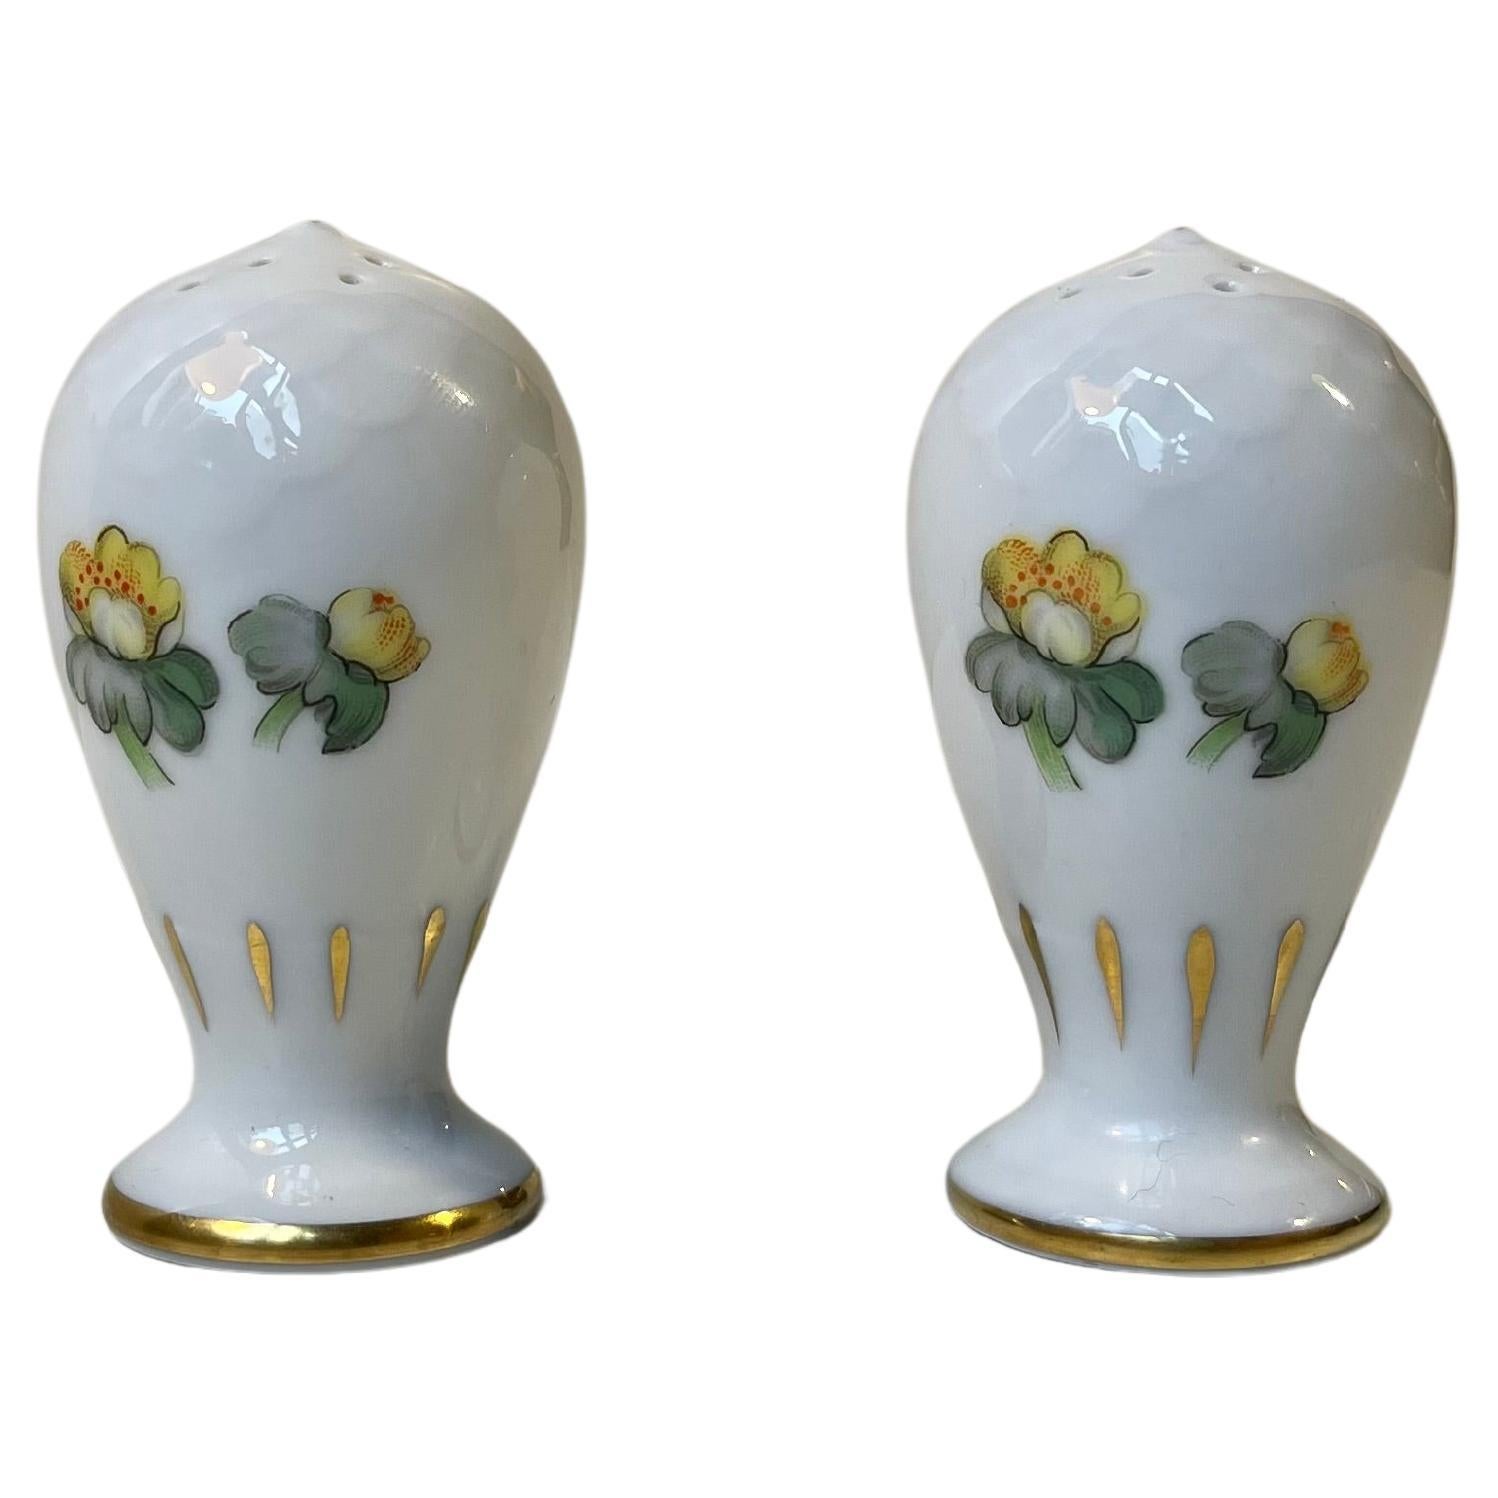 Salière et poivrière en porcelaine avec Errants peints à la main par Bing & Grondahl 